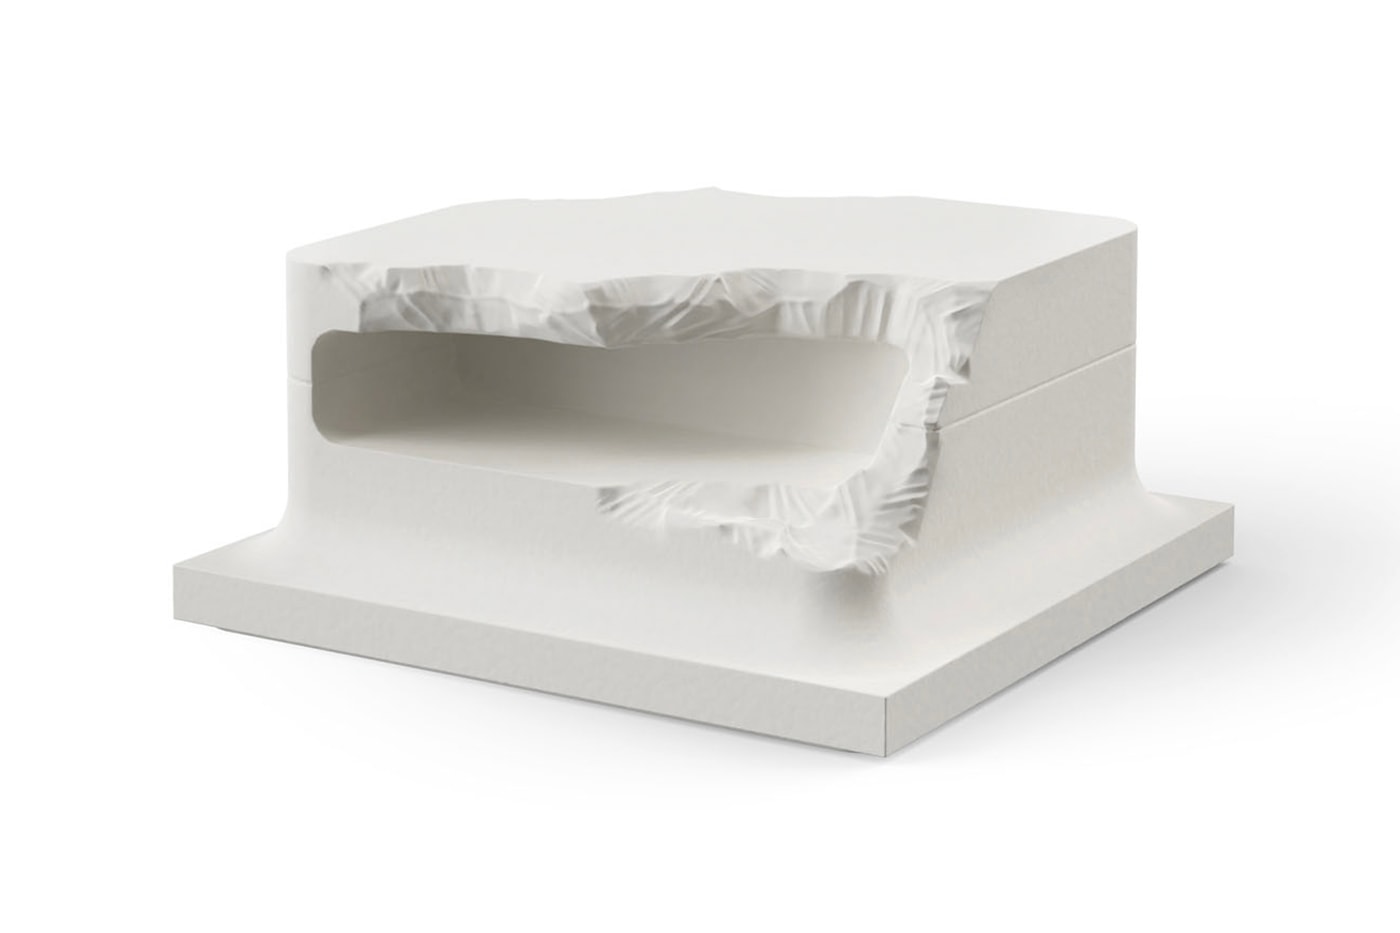 Sculpted Series Gufram x Snarkitecture Milan Design Week 2023 Info